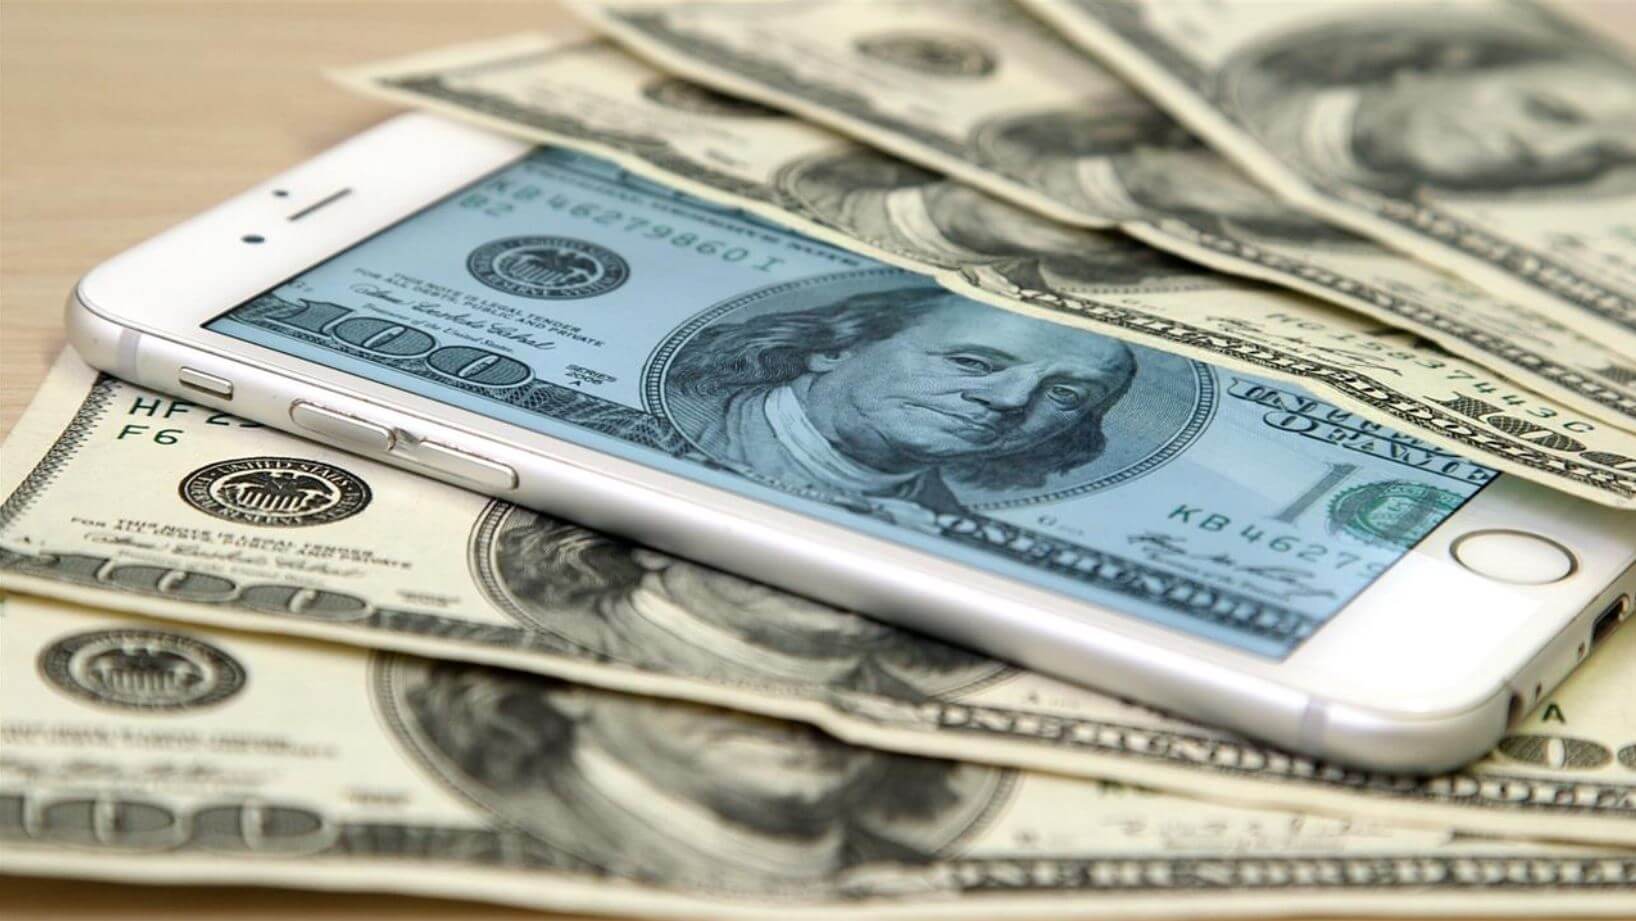 iphone money